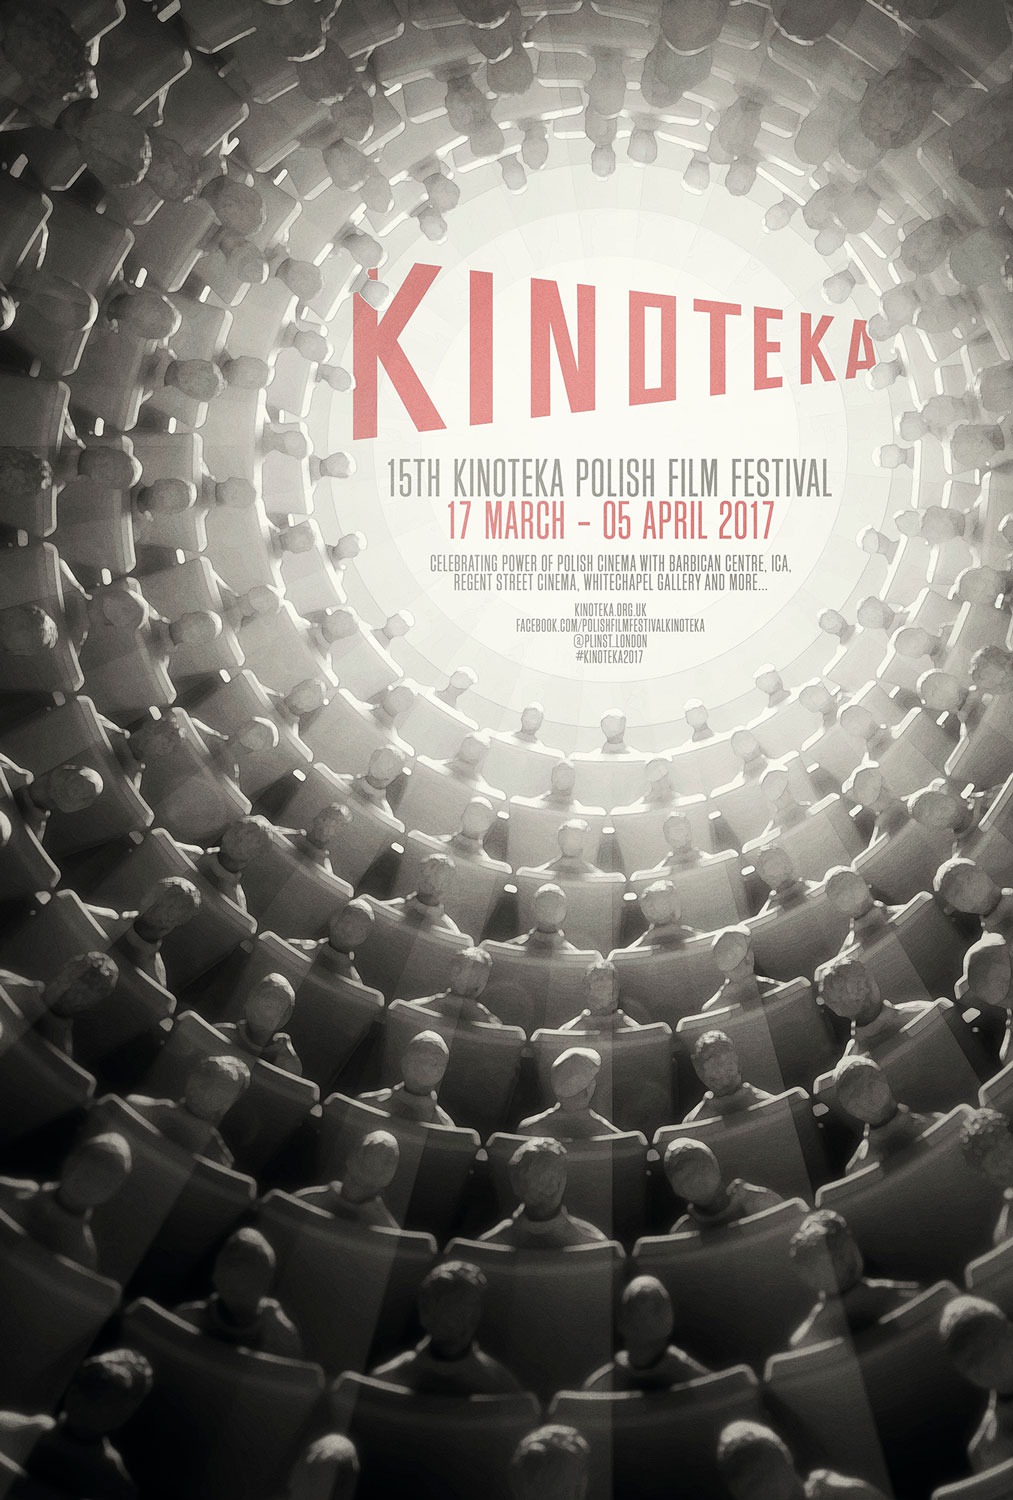 Extra Large TV Poster Image for Kinoteka Polish Film Festival (#4 of 4)